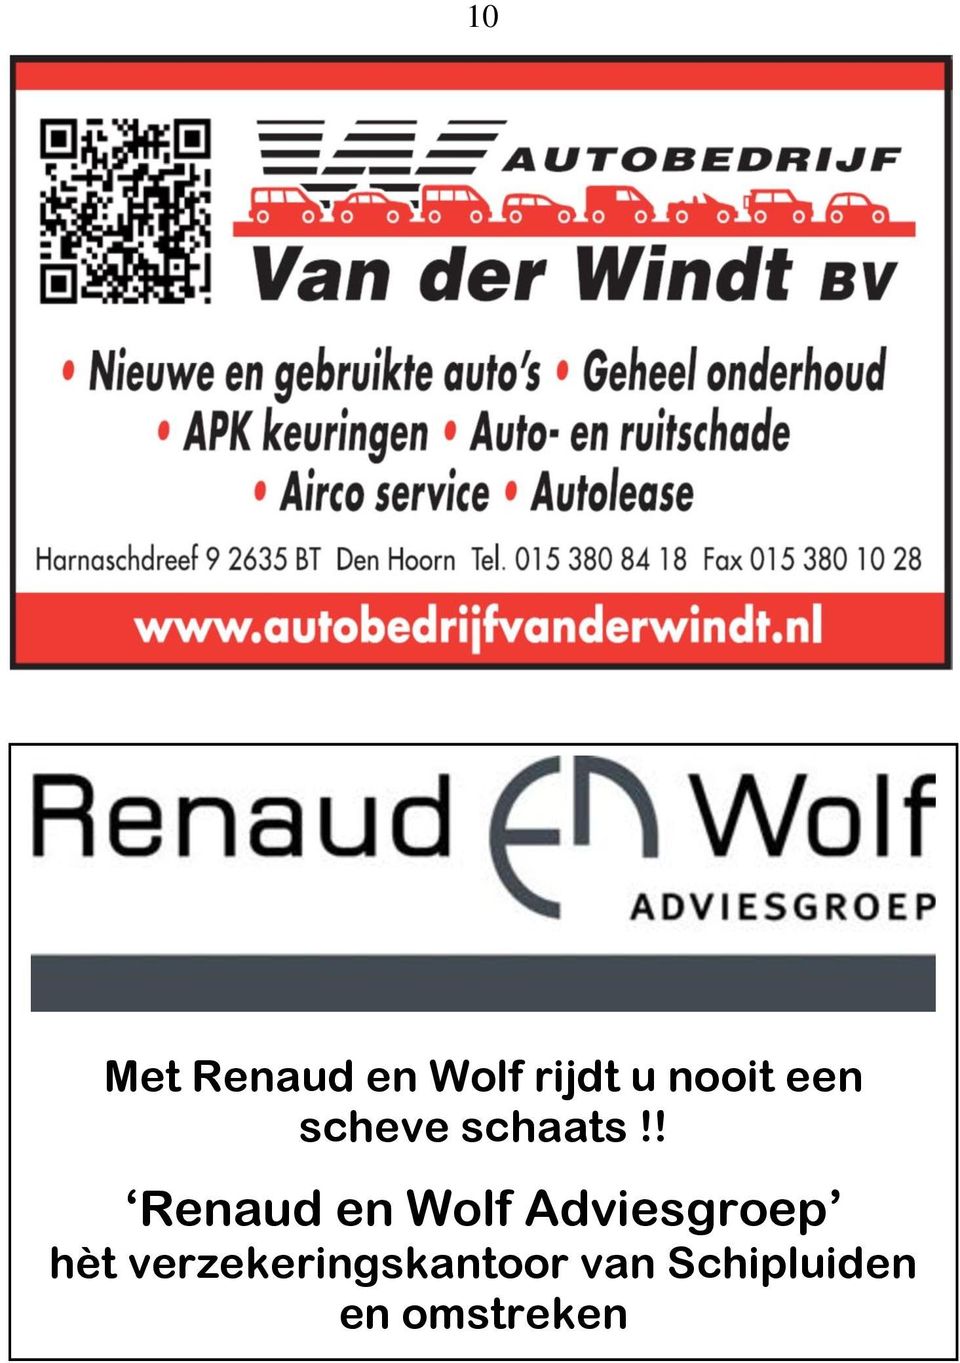 ! Renaud en Wolf Adviesgroep hèt